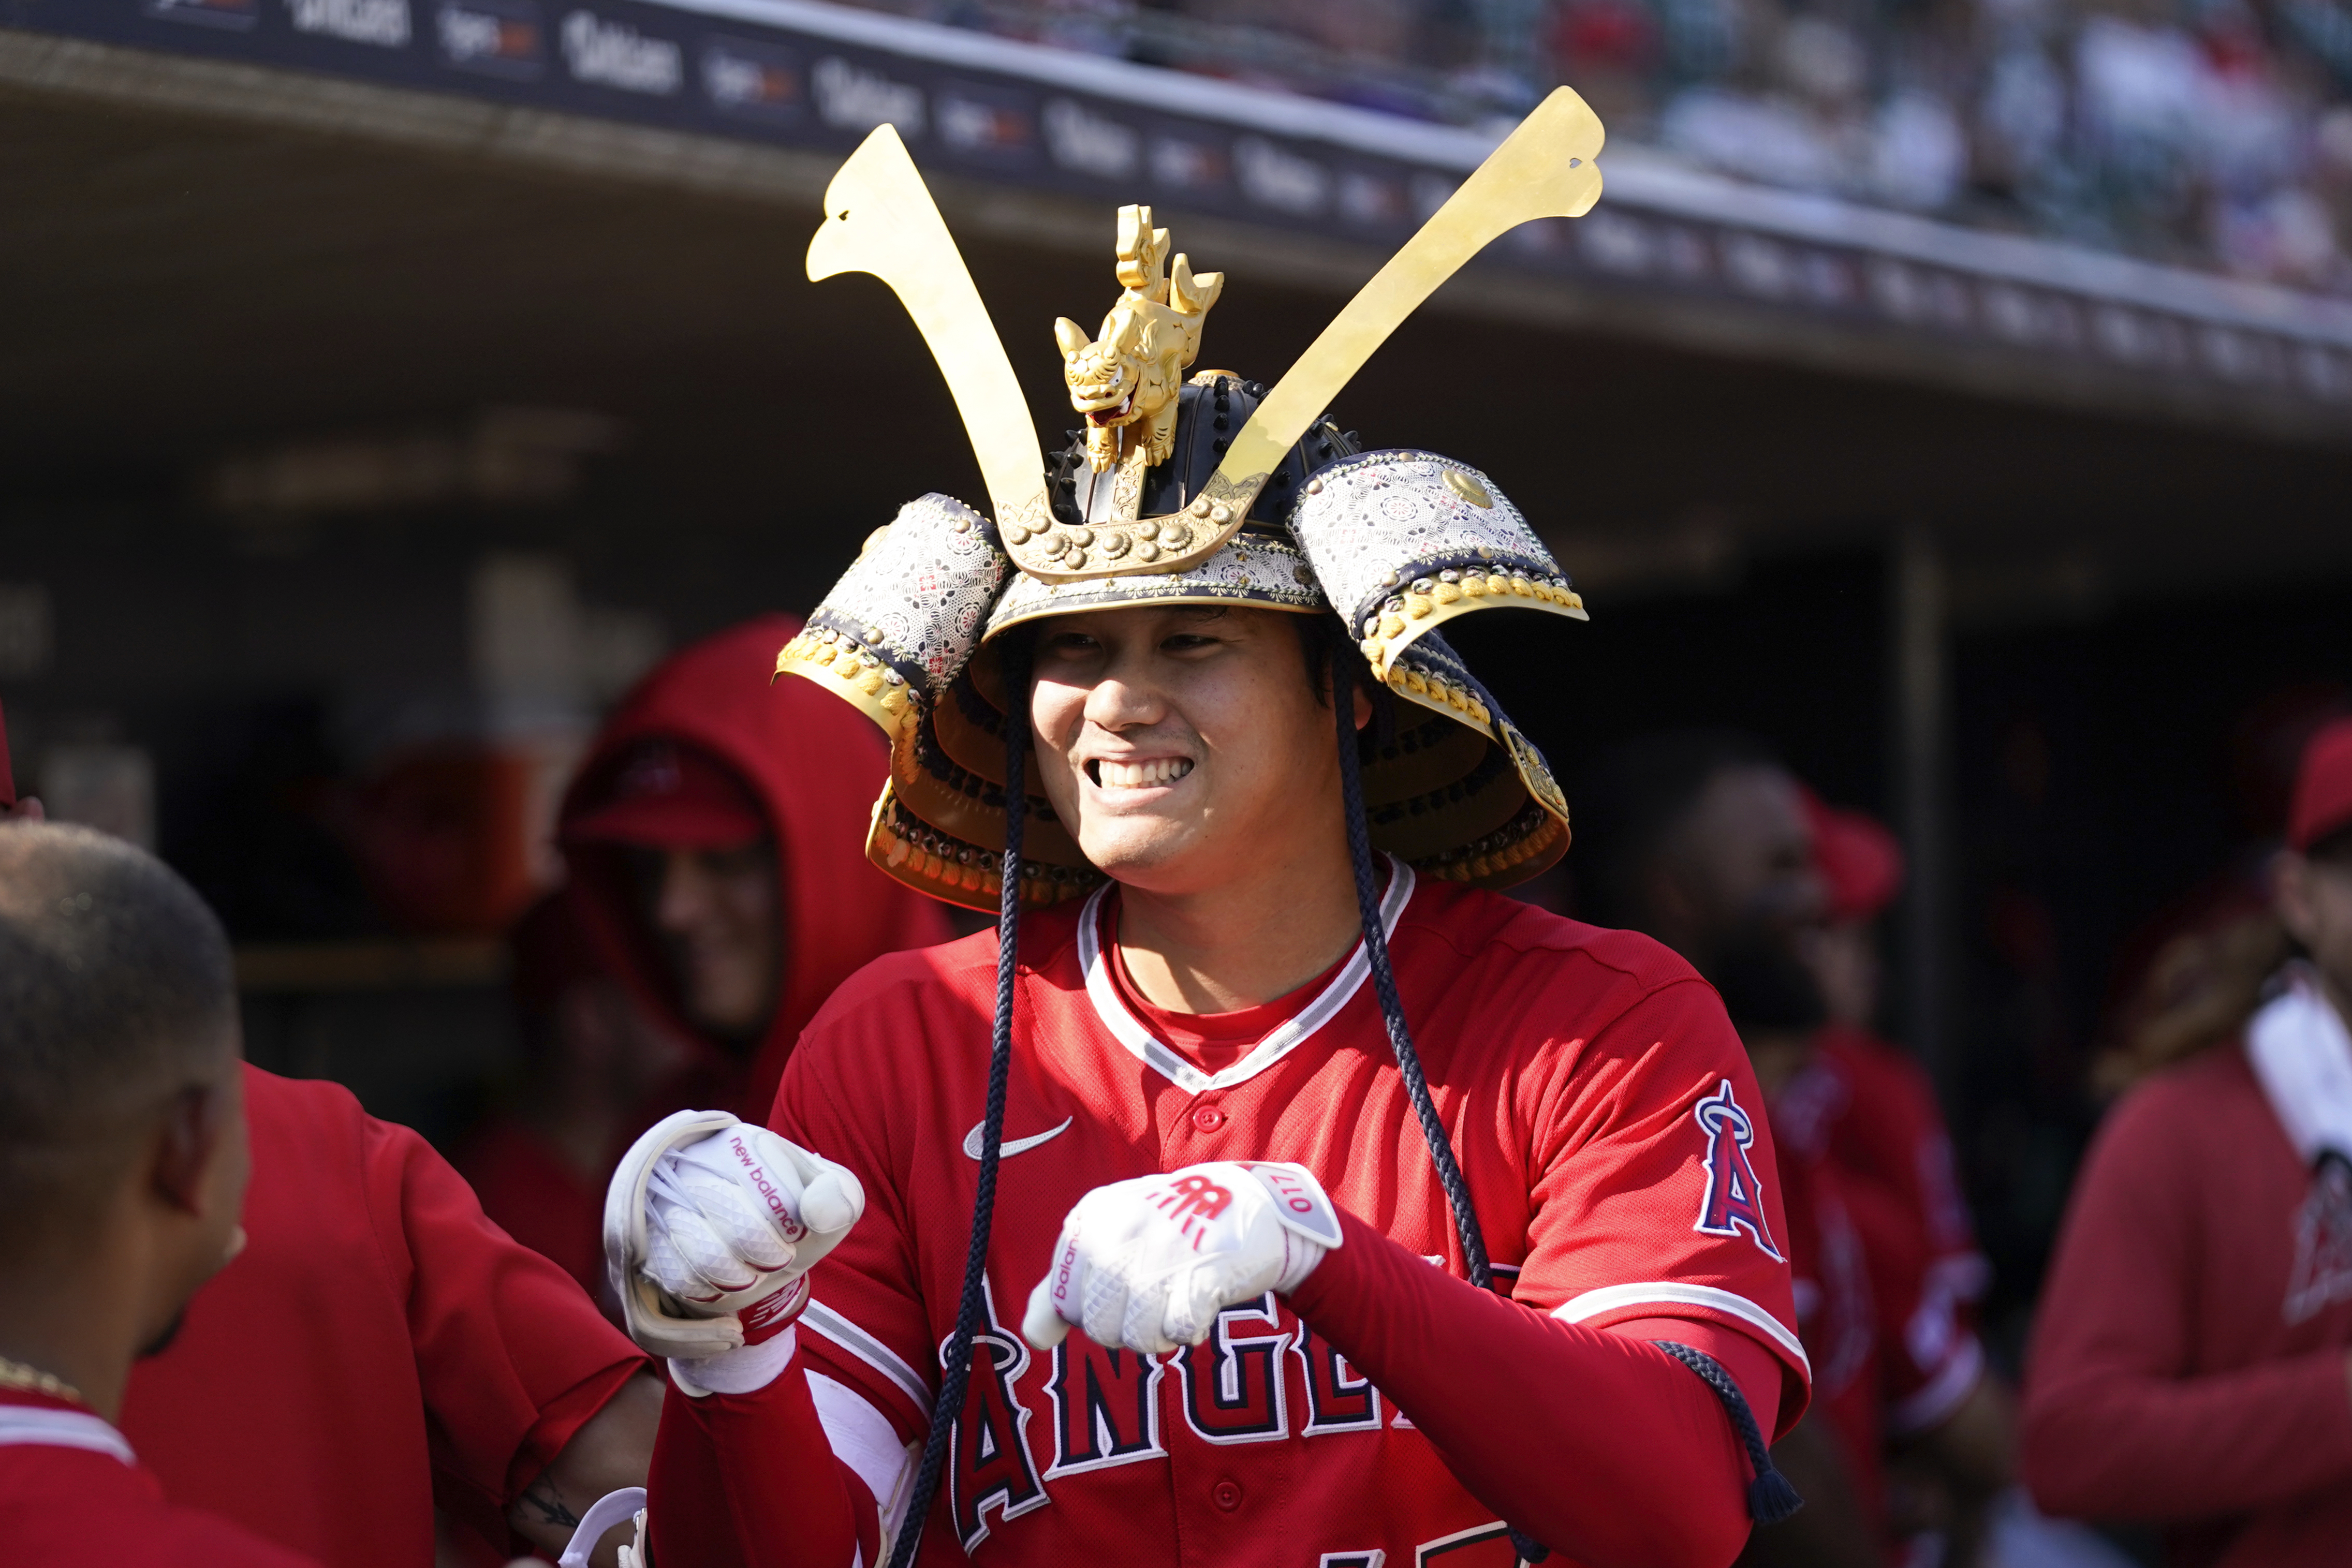 SAMURAI STORE brought a samurai warrior helmet to MLB team Los